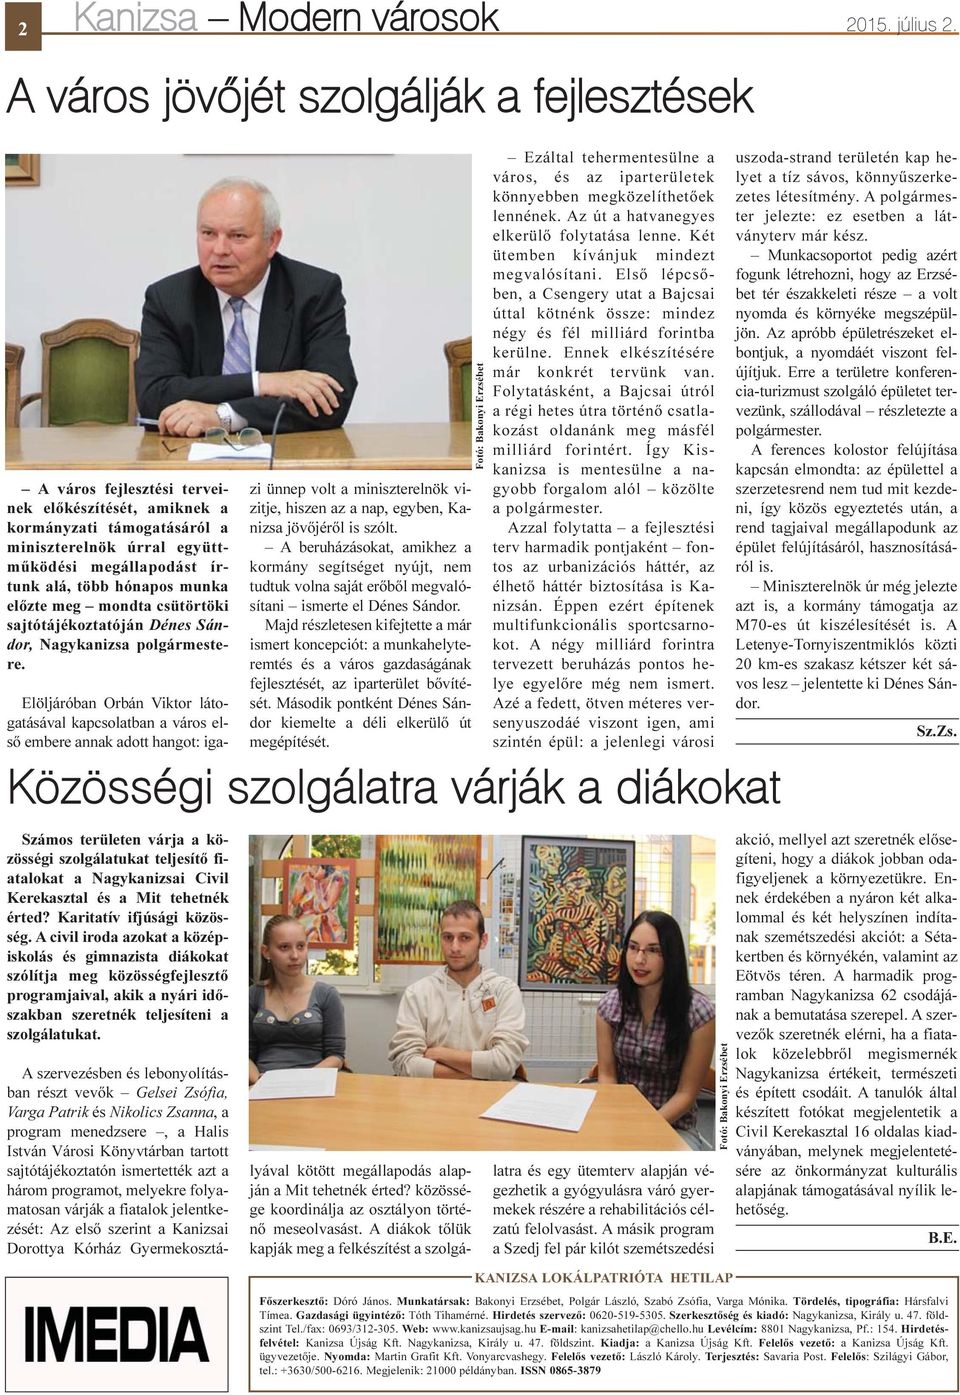 munka elõzte meg mondta csütörtöki sajtótájékoztatóján Dénes Sándor, Nagykanizsa polgármestere.